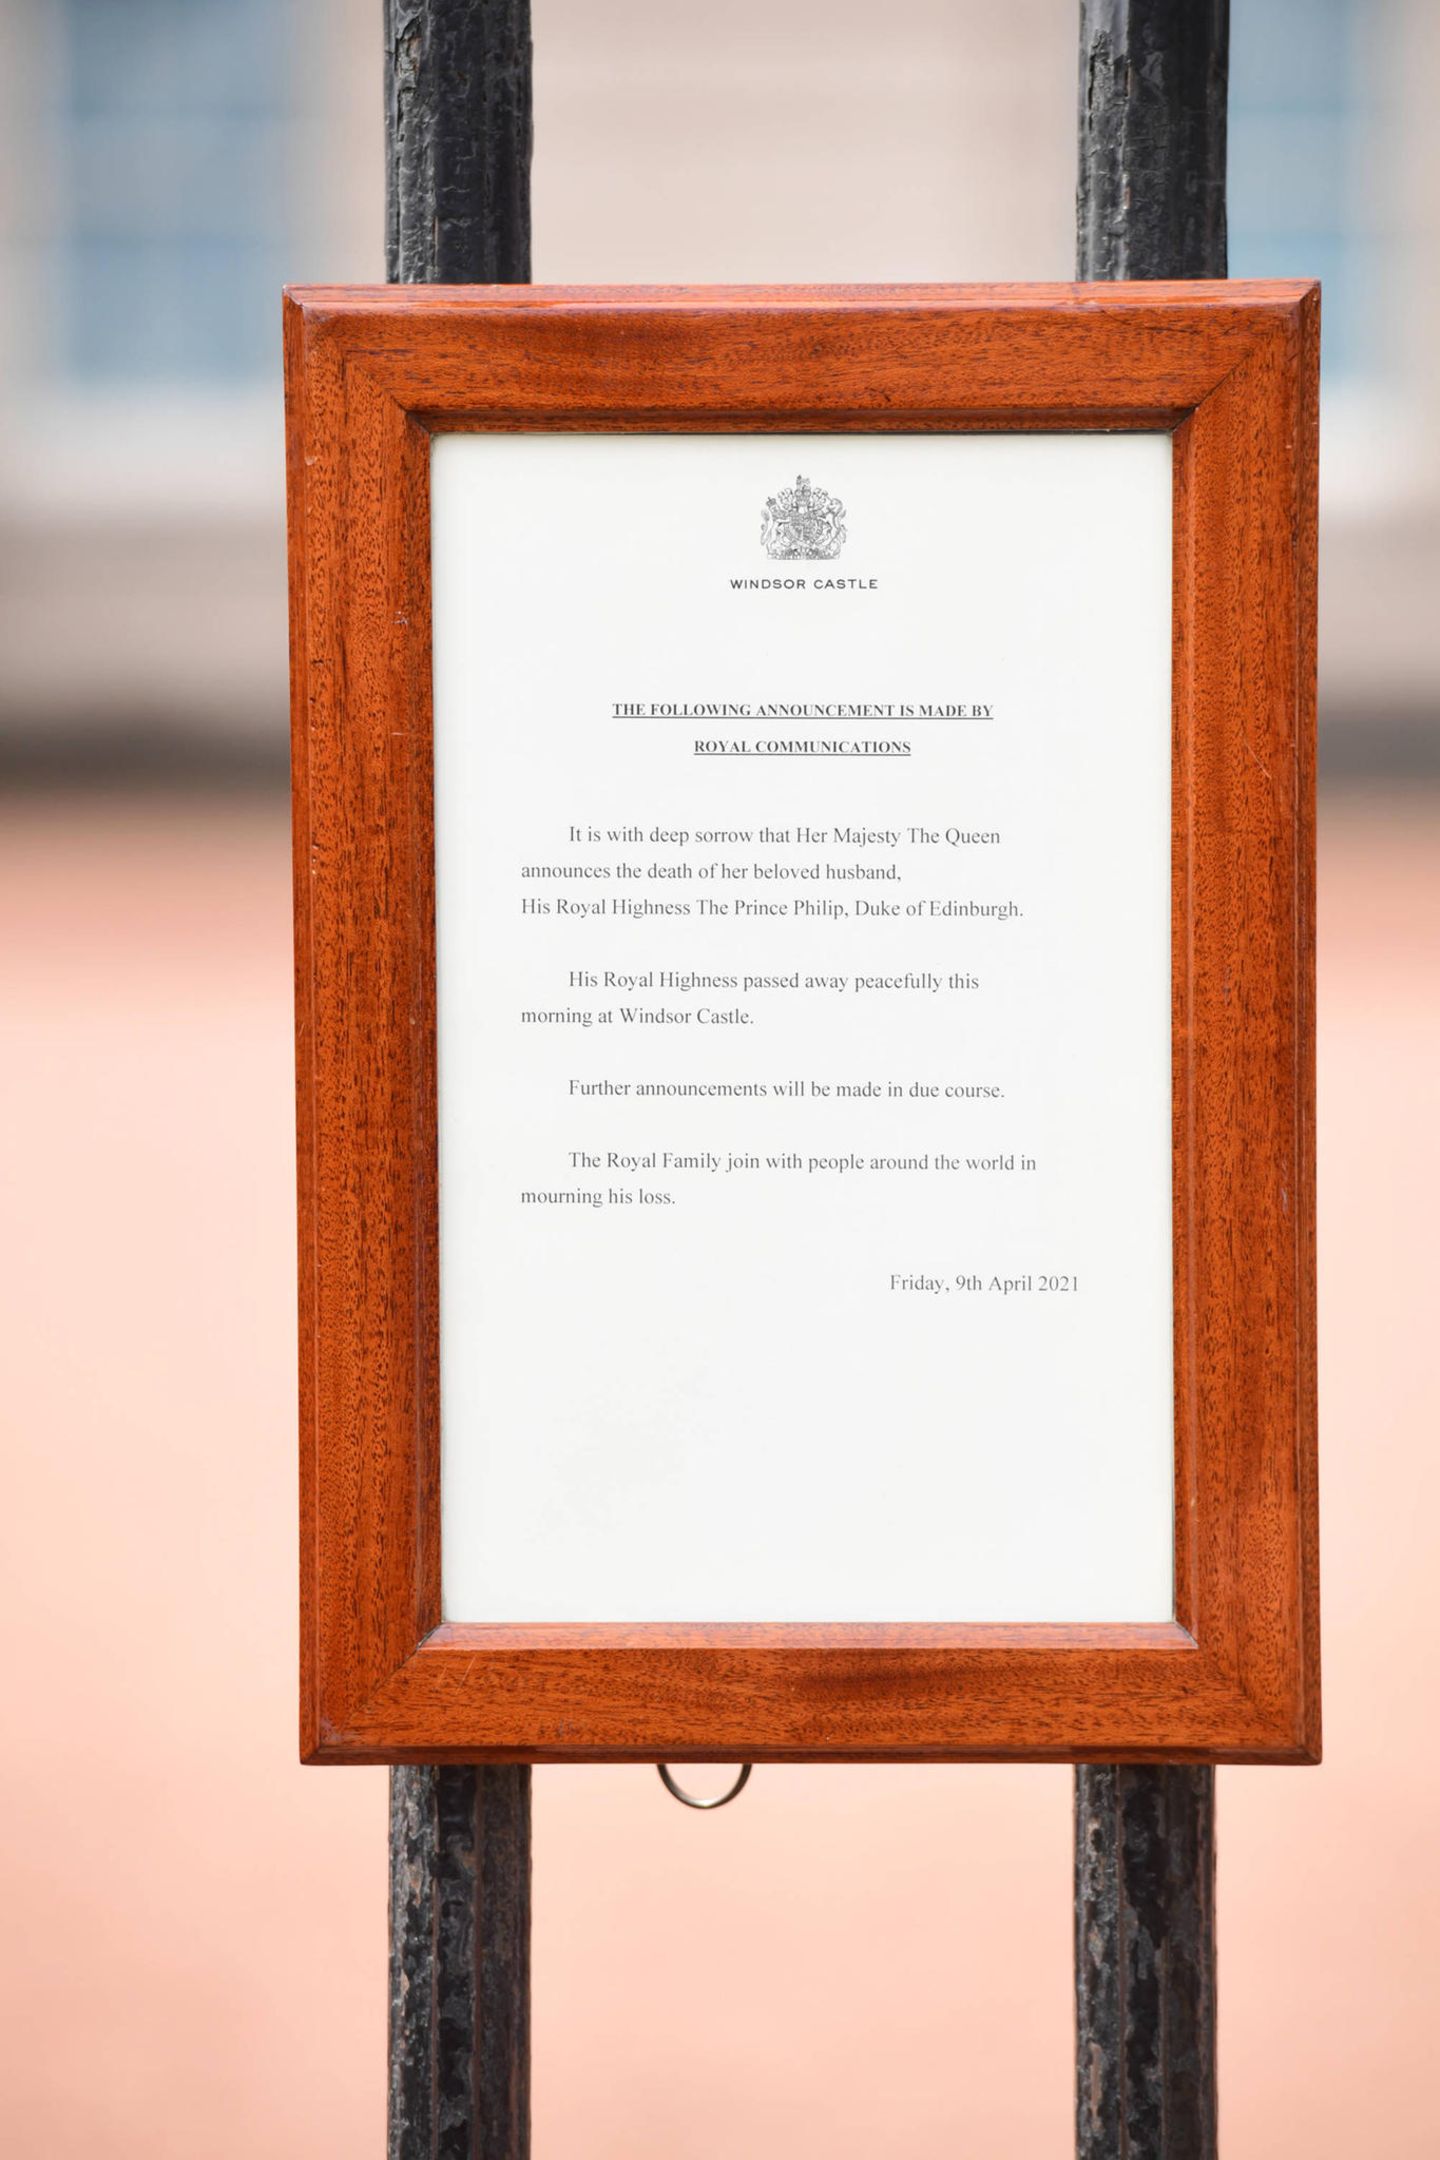 Die offizielle Nachricht zum Tod von Prinz Philip wurde kurz nach der öffentlichen Bekanntgabe am Tor des Buckingham Palasts in London angebracht. Dort hing sie jedoch nicht lang ...